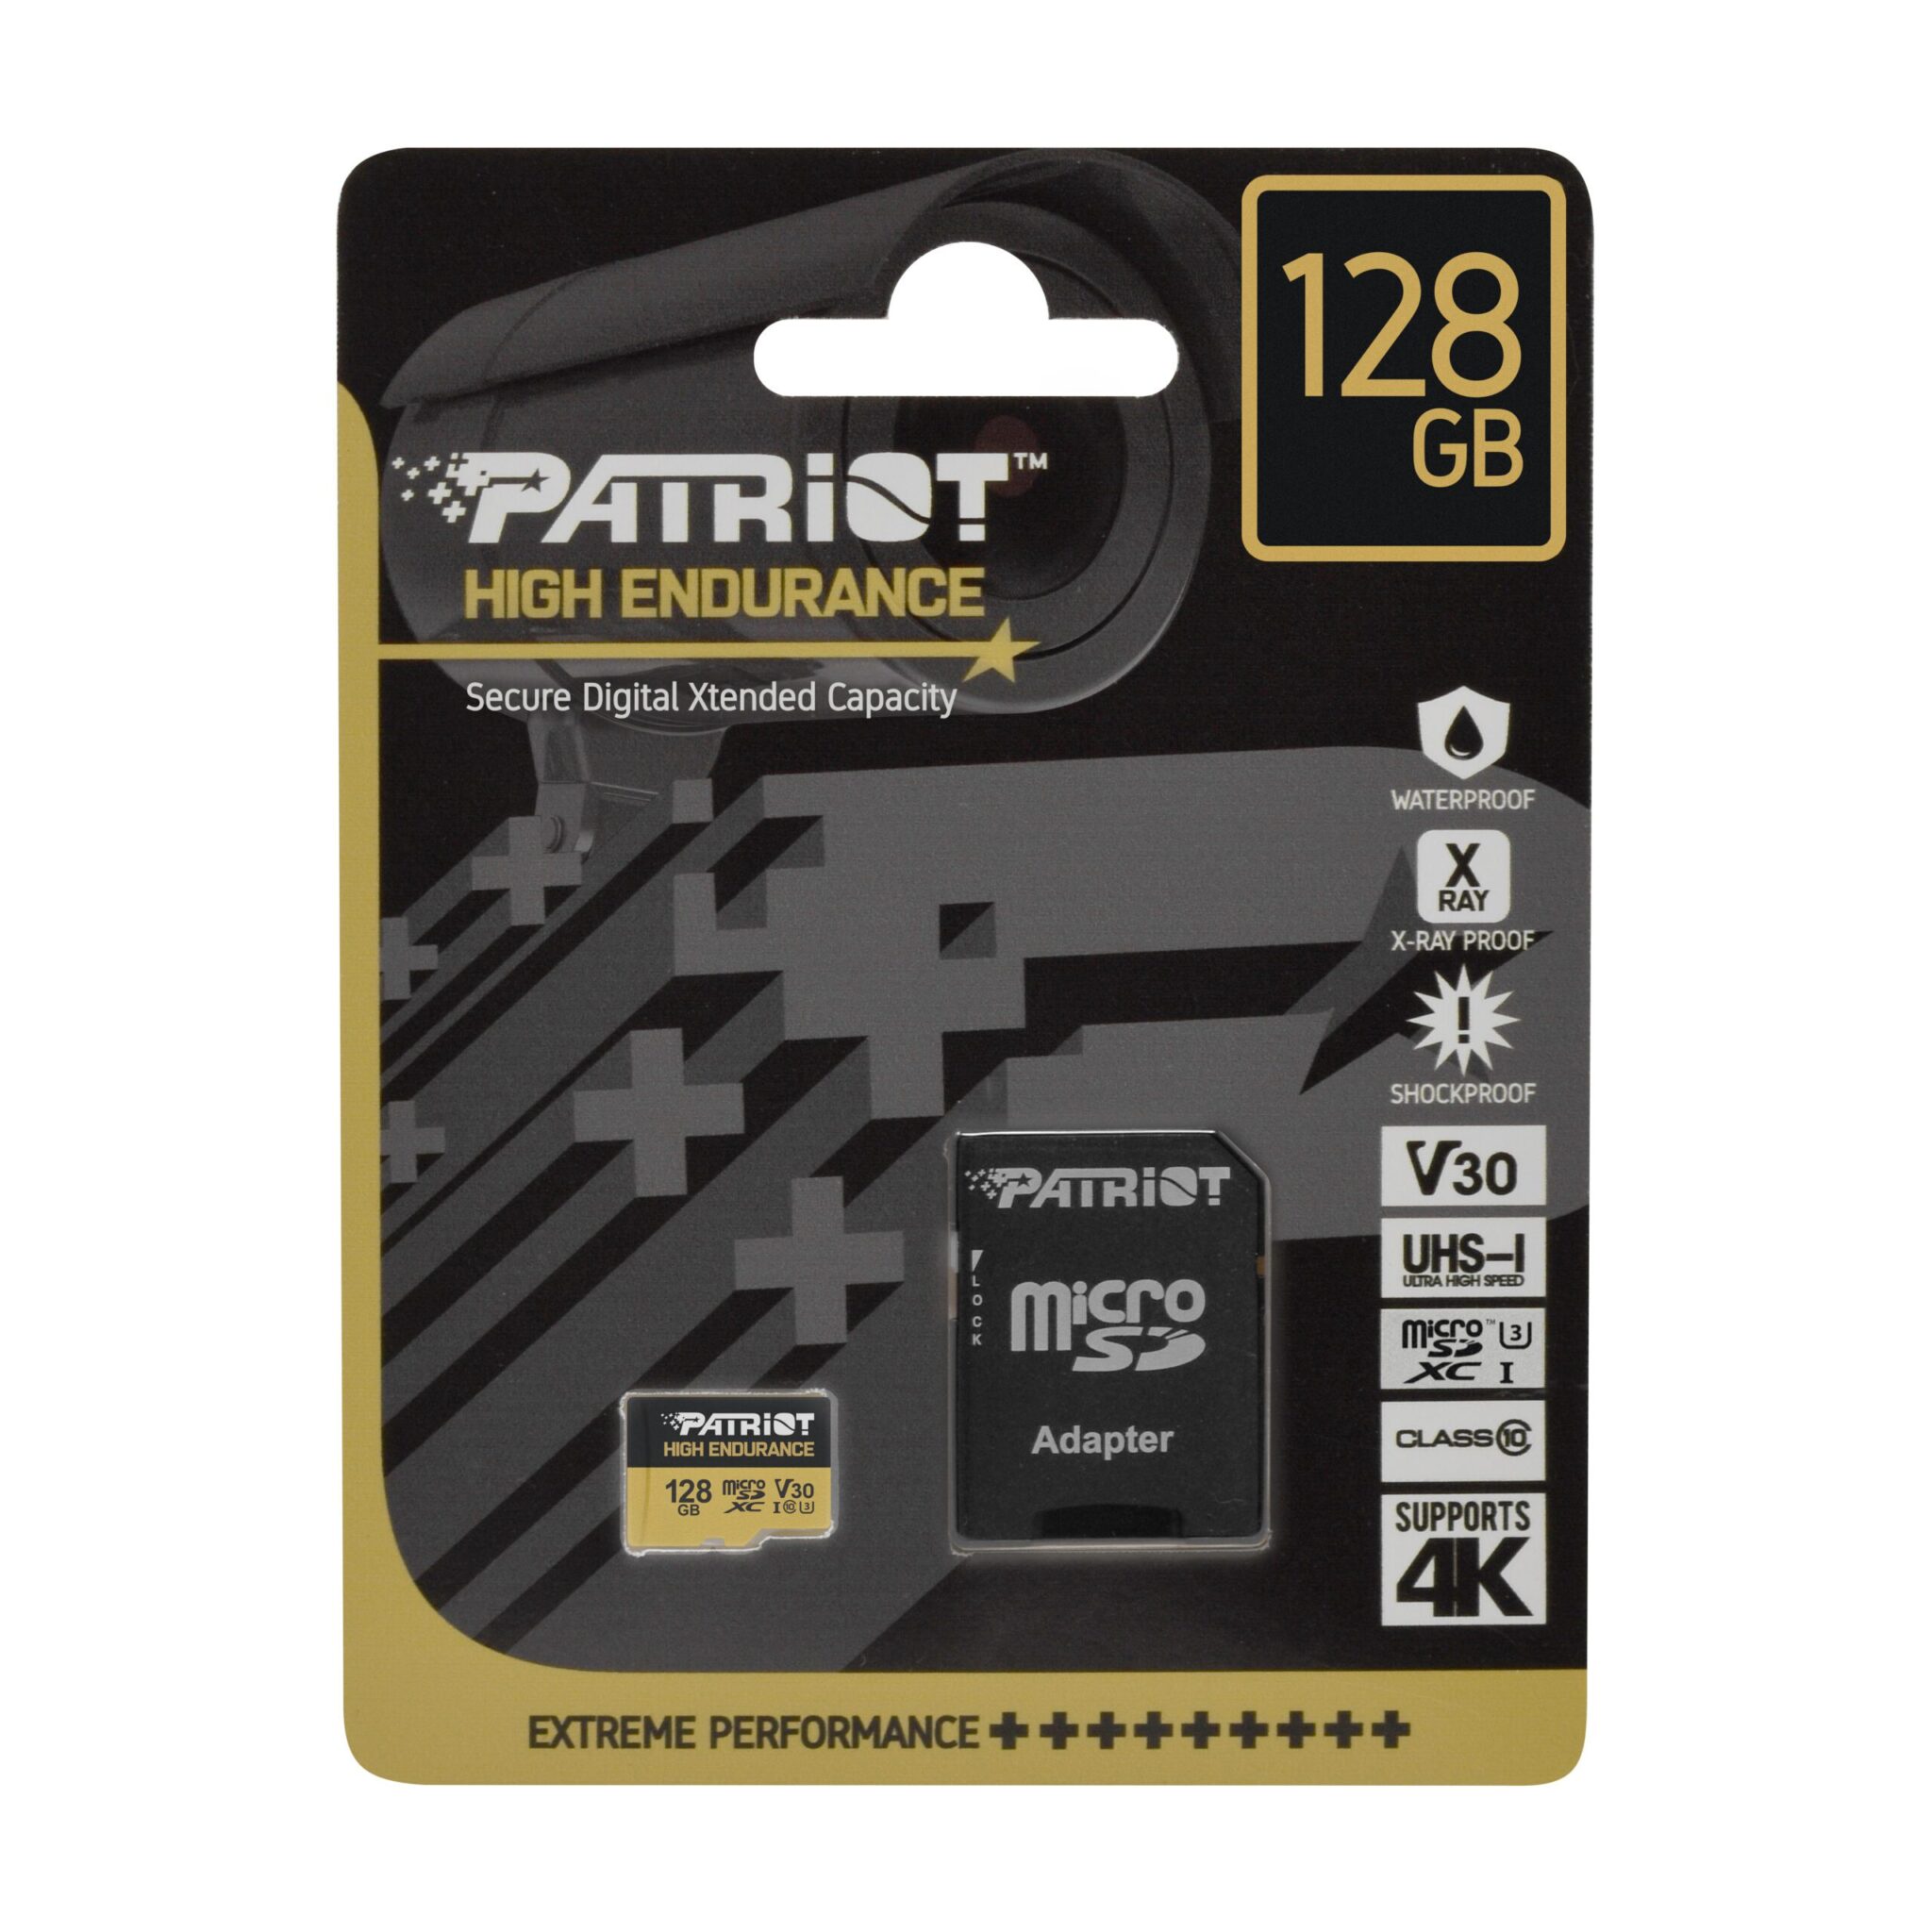 High Endurance microSD F 128GB scaled scaled